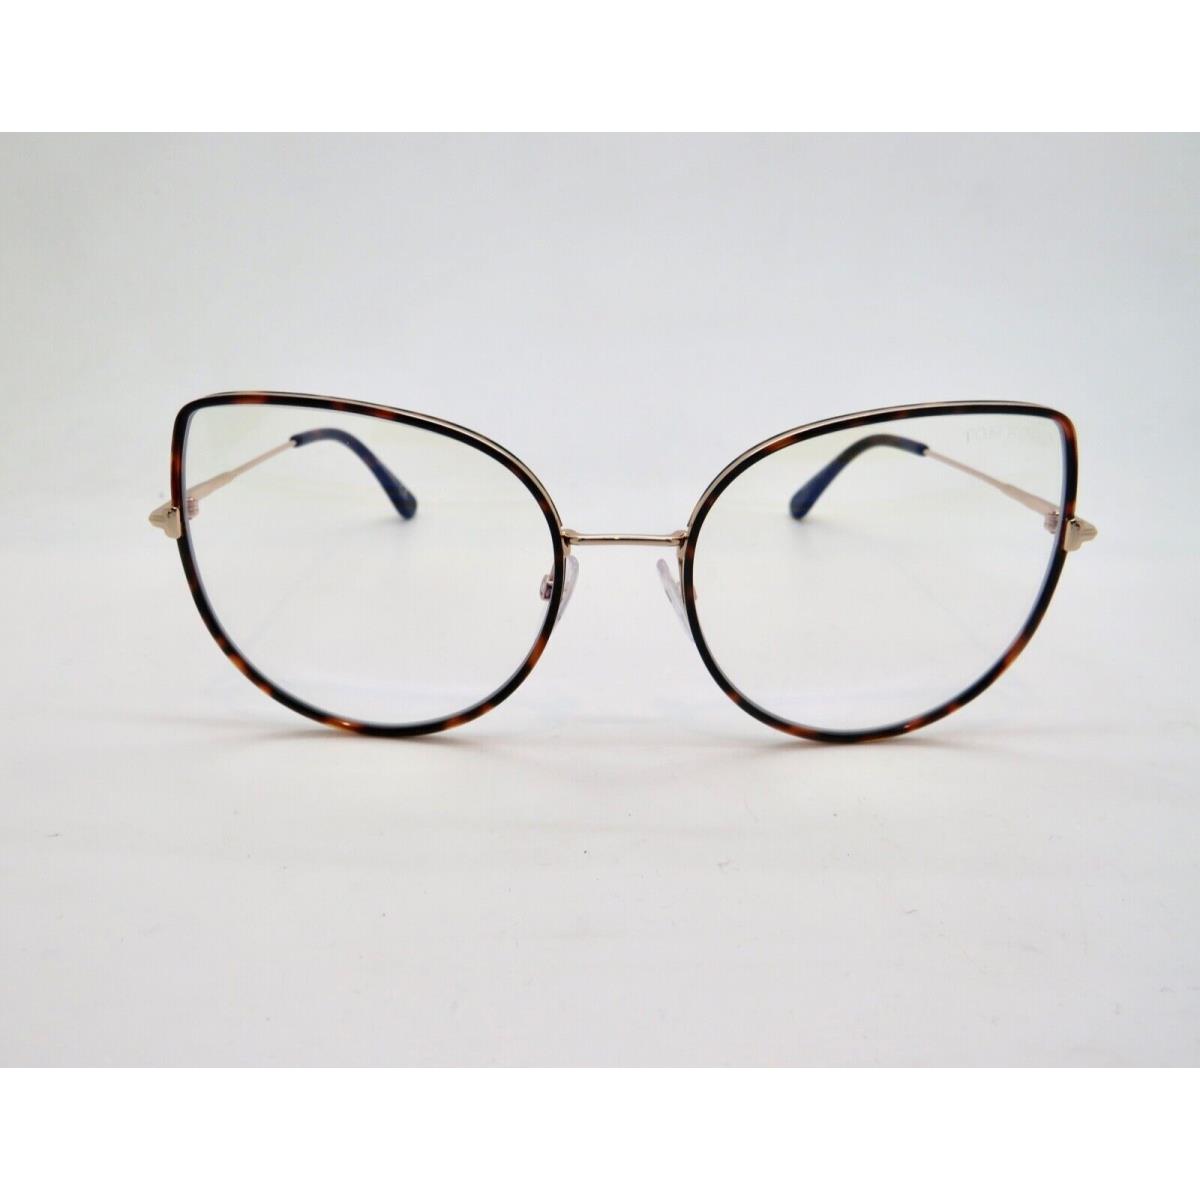 Tom Ford eyeglasses  - Havana Tortoise/Gold Frame 0